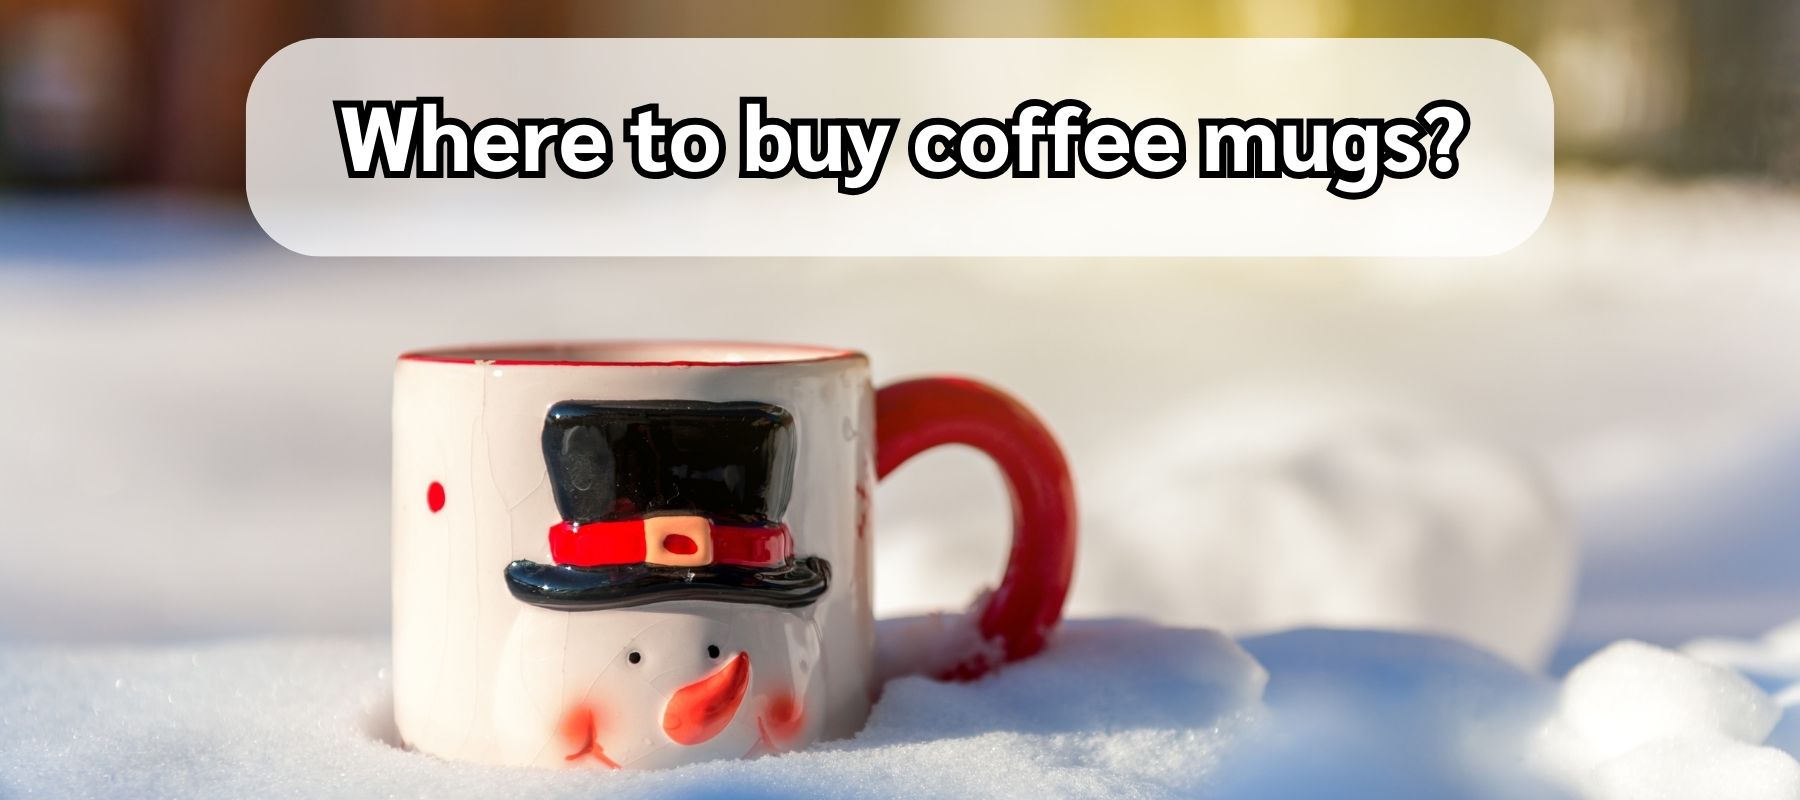 How-to-buy-coffee-mugs?